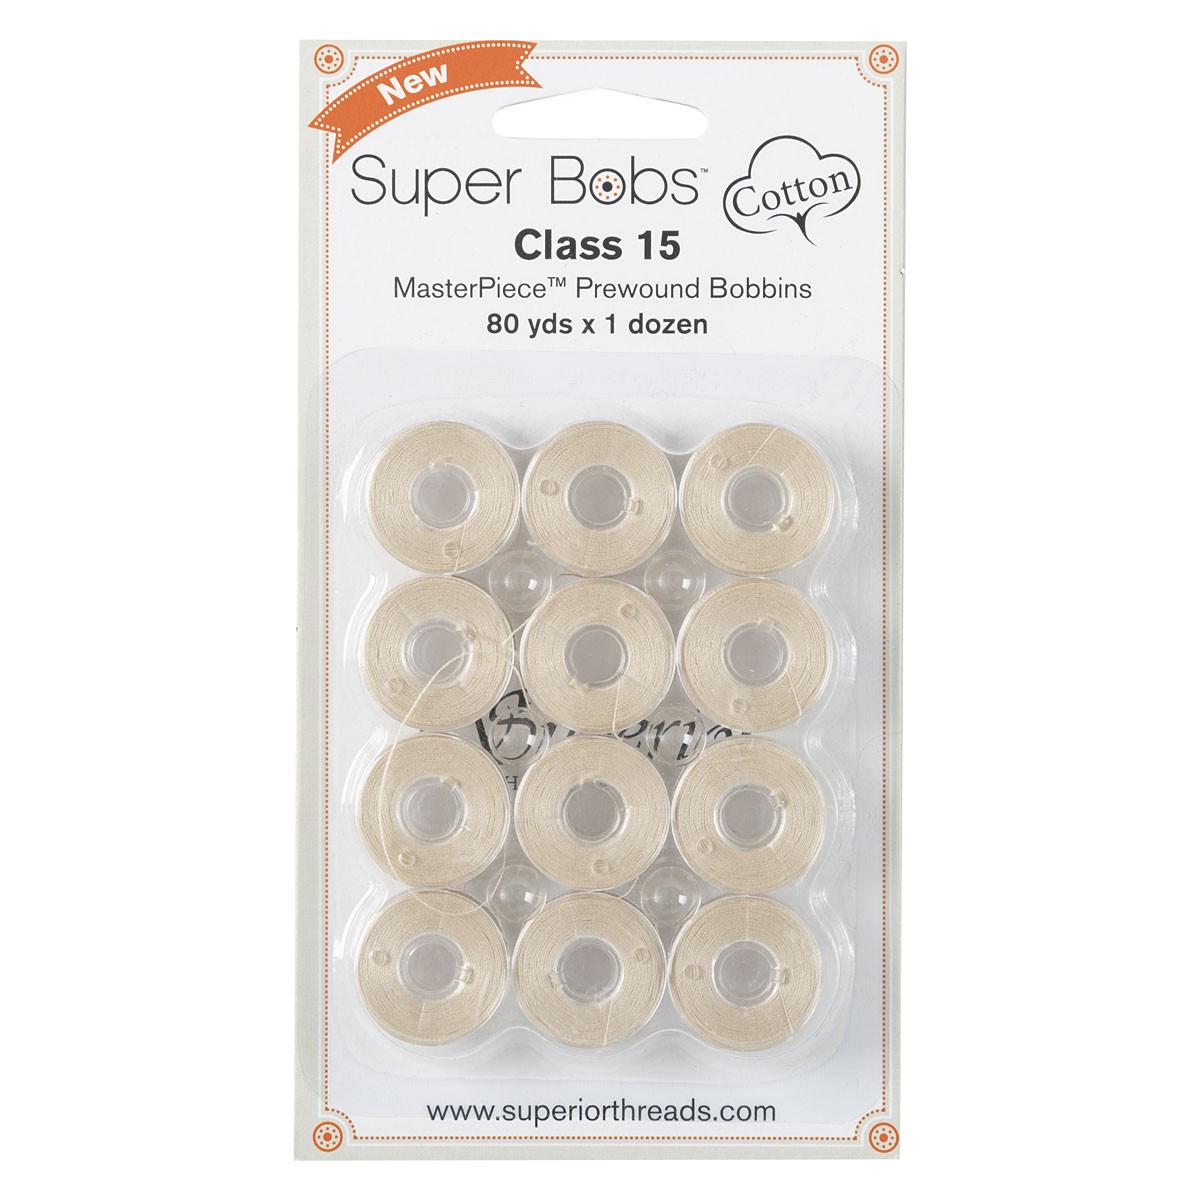 Super Bobs Cotton Class 15 Bobbin - Parchment